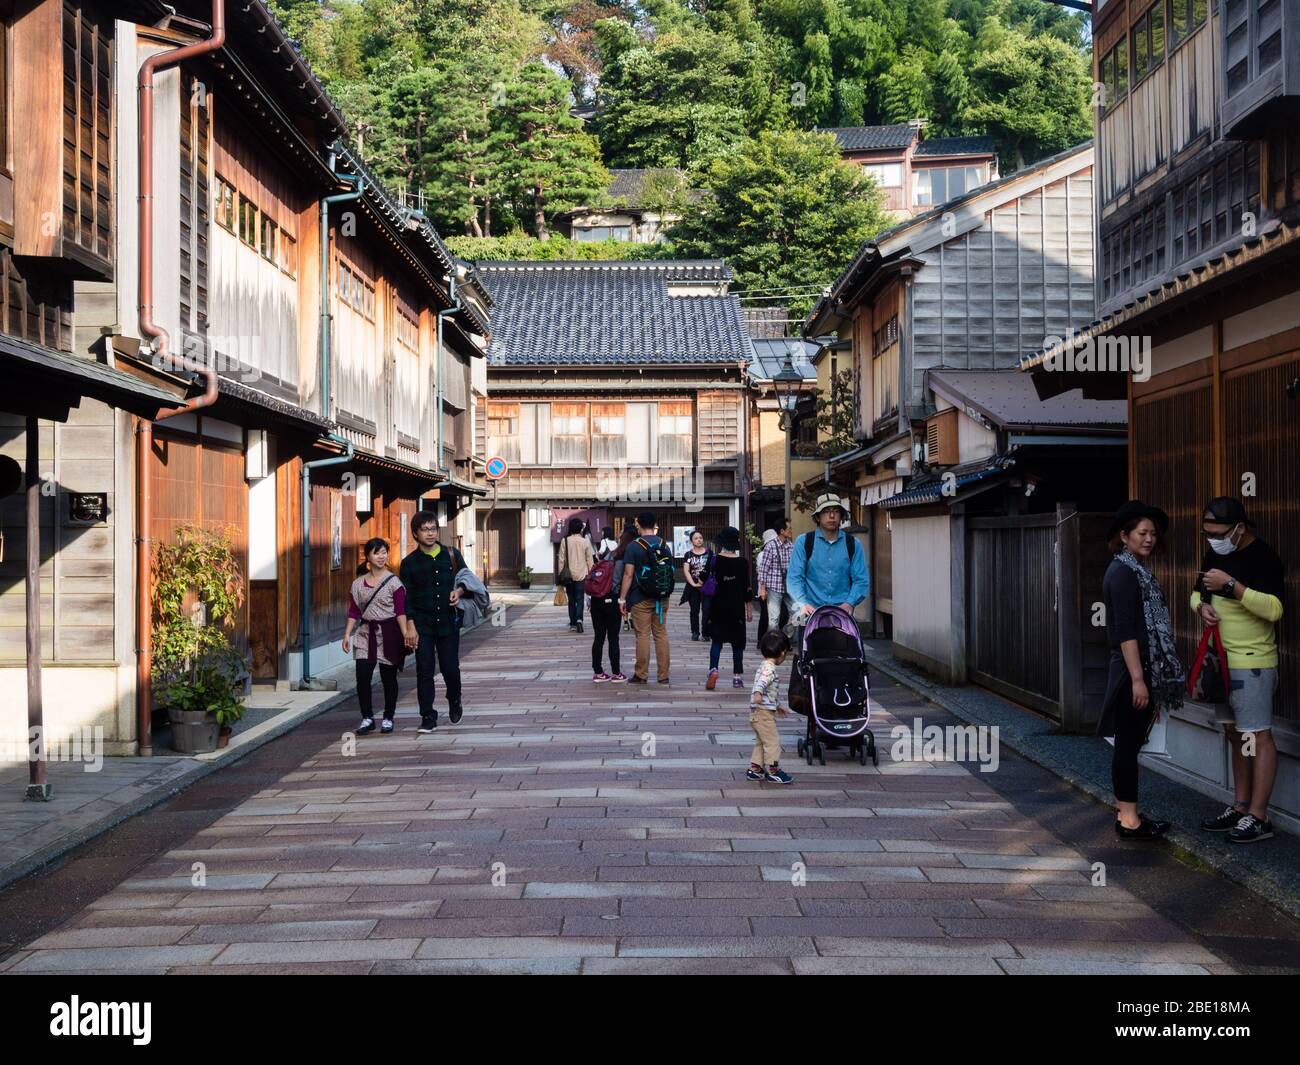 Kanazawa, Japan - 28. September 2015: Touristen schlendern durch traditionelle japanische Häuser im Stadtteil Higashi Chaya Stockfoto